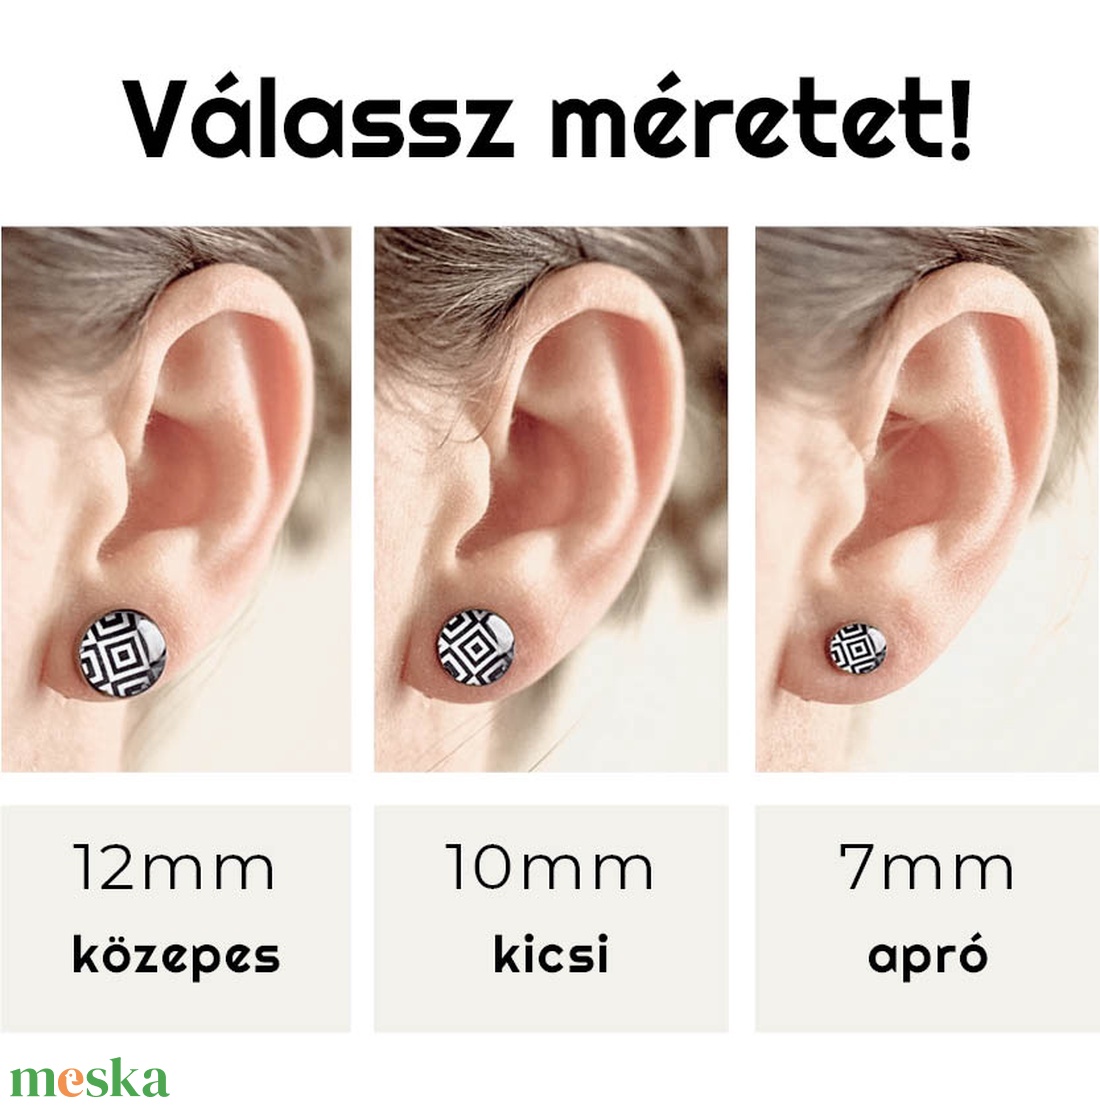 Kalocsai motívumos orvosi acél pötty fülbevalók (fekete-fehér, 5) - ékszer - fülbevaló - pötty fülbevaló - Meska.hu